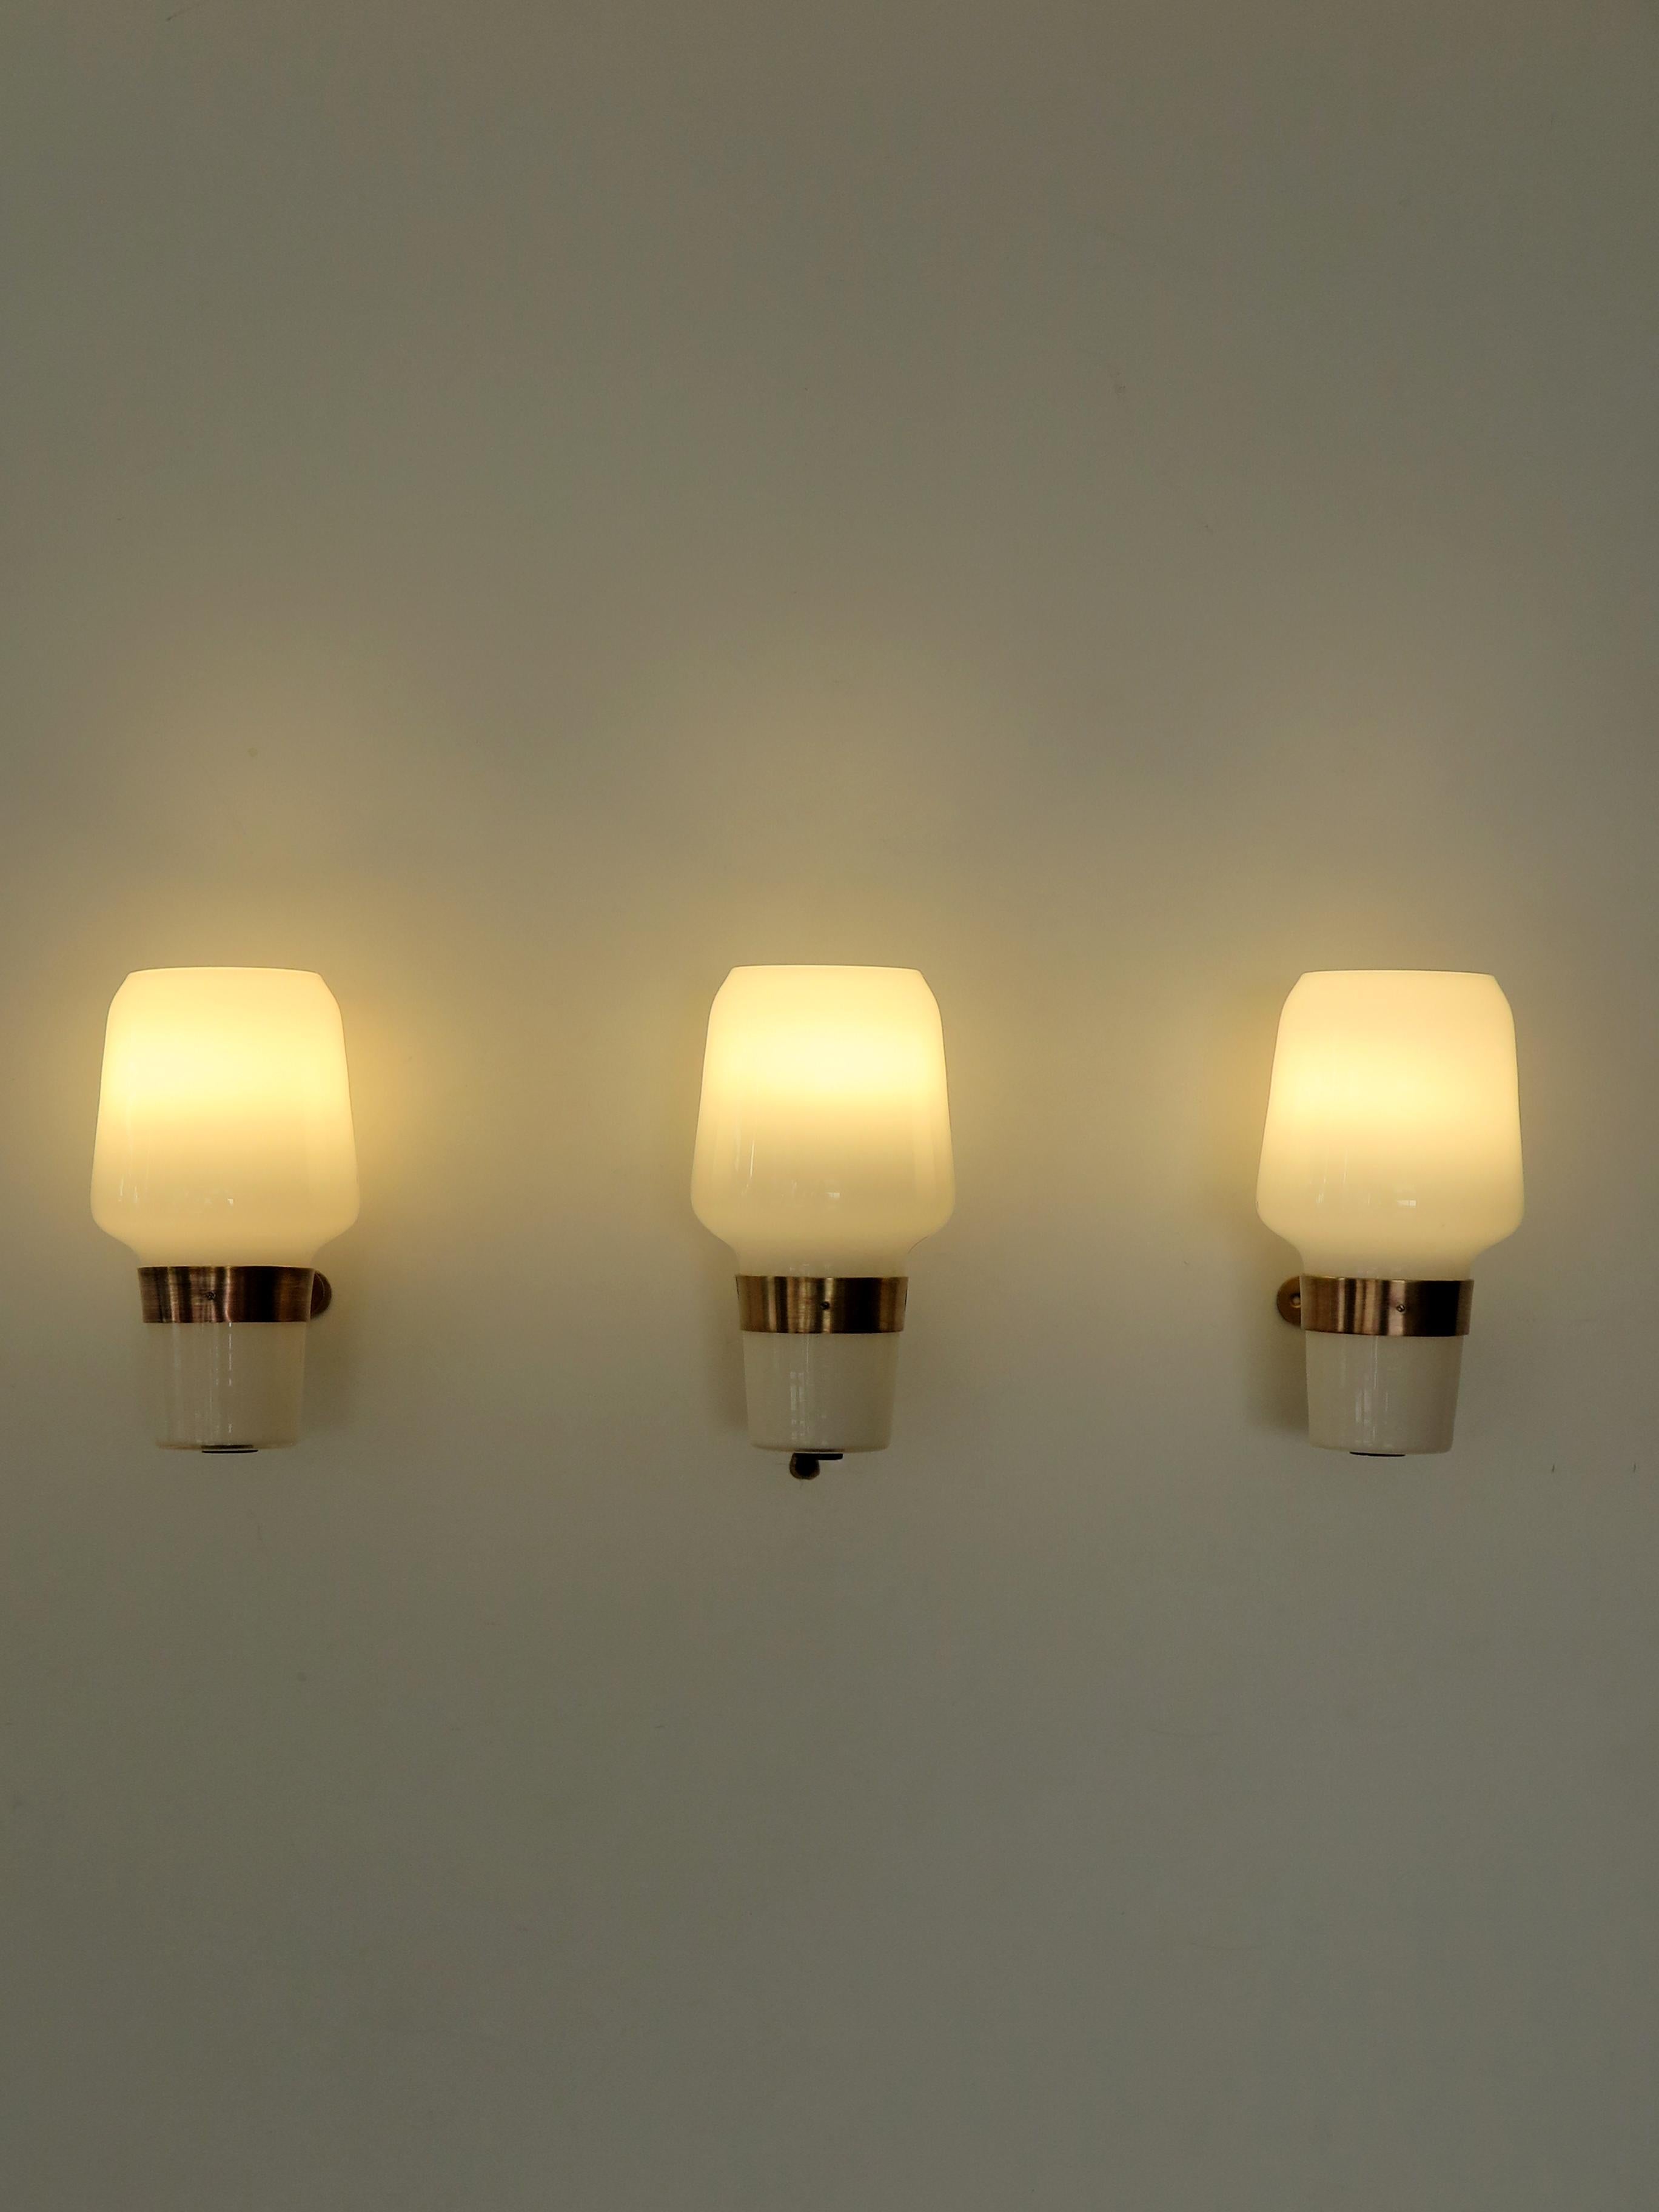 Mid-20th Century Massimo Vignelli for Venini Murano Italian Glass Brass Sconces Wall Lamps, 1950s For Sale